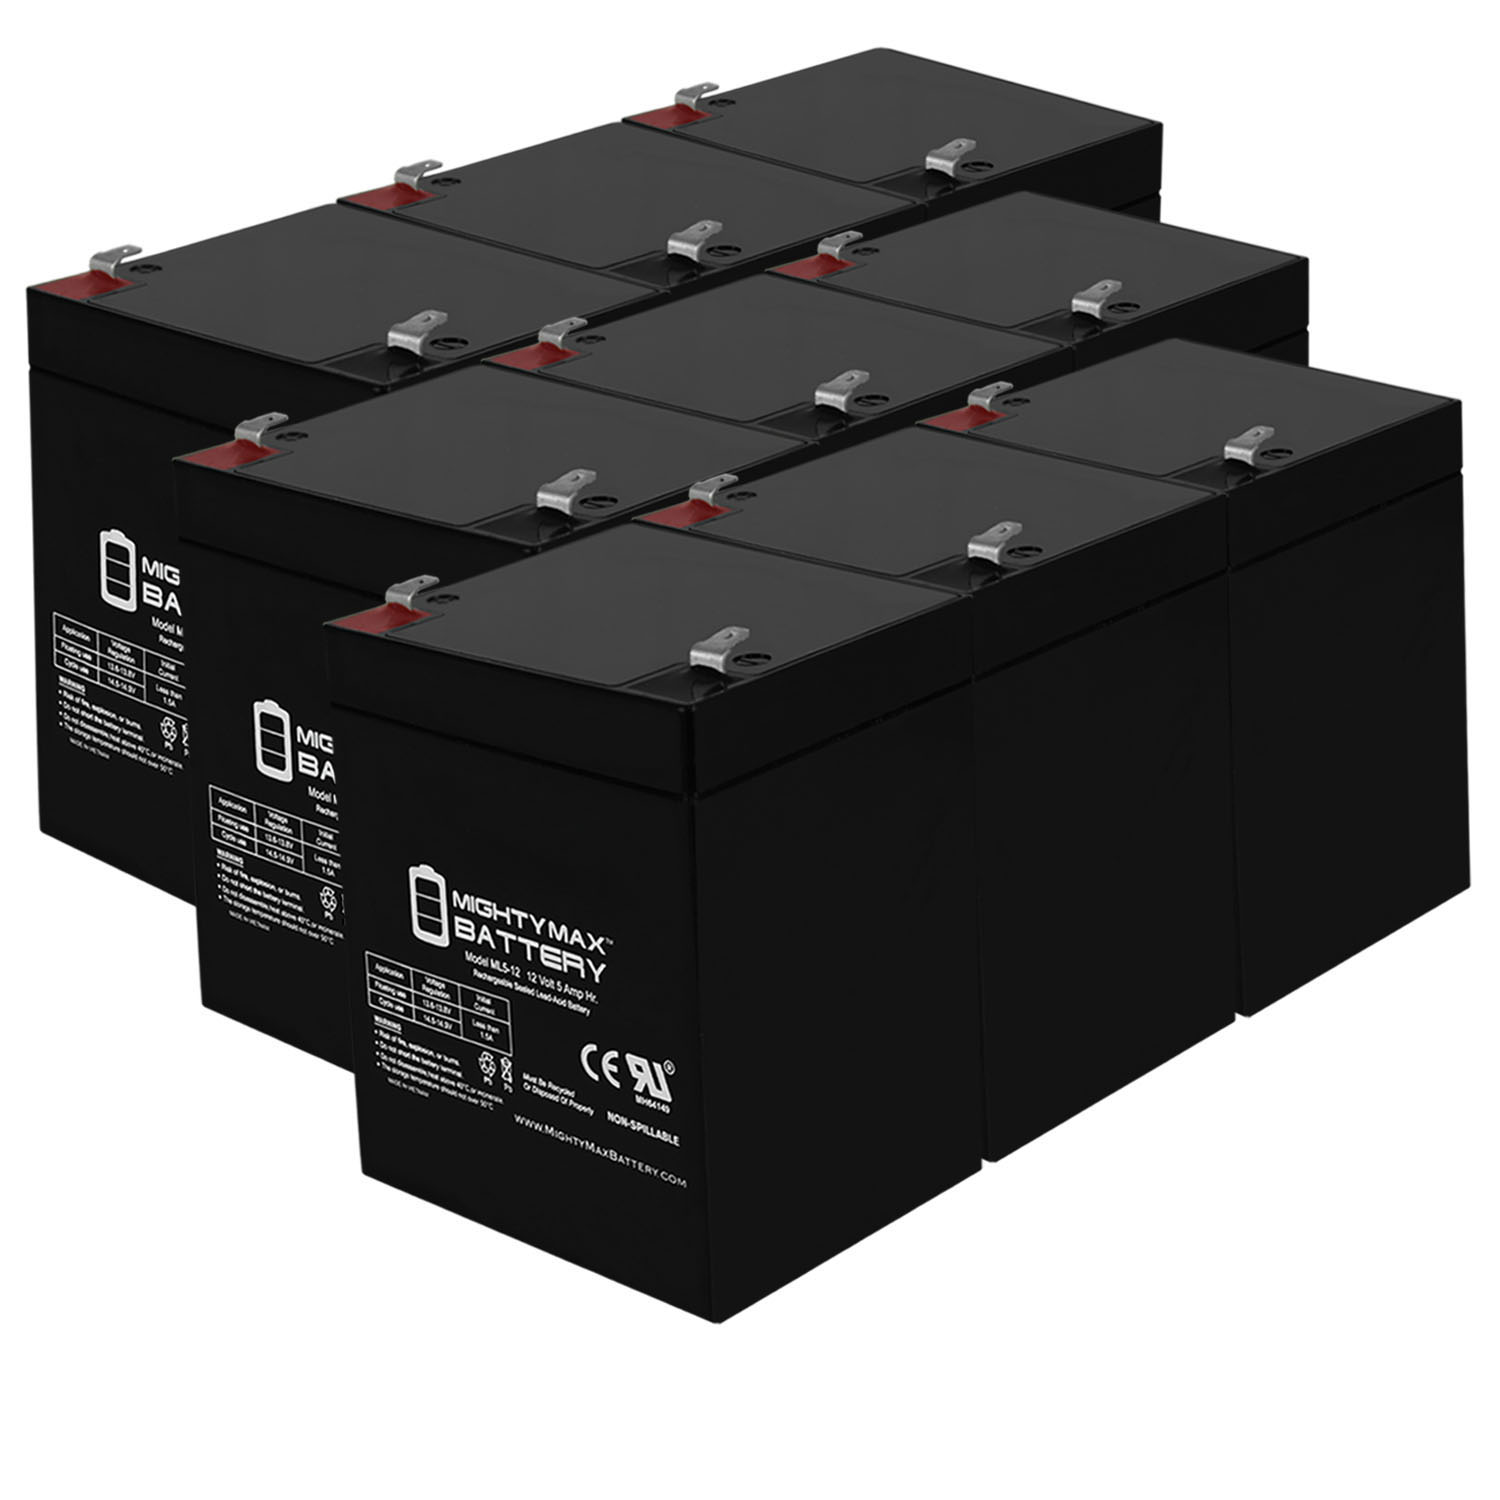 12V 5AH SLA Replacement Battery for Diamec DM12-4.2 - 9 Pack